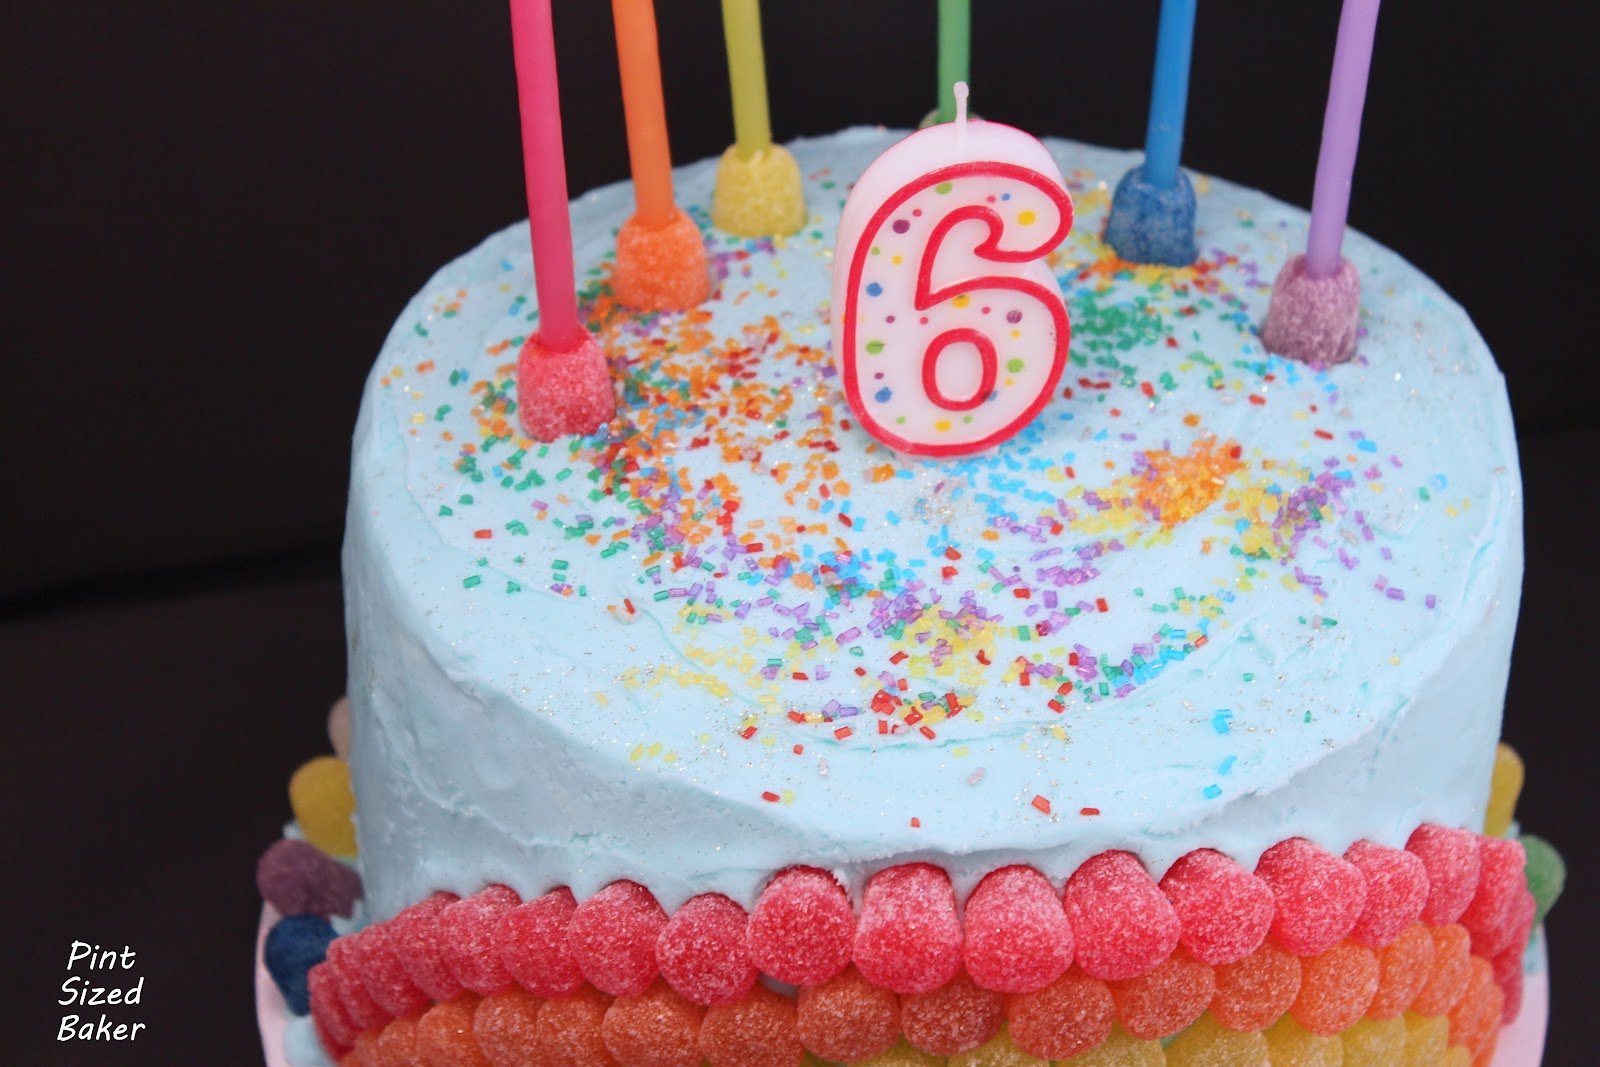 Торт на день рождения девочке 6 лет фото